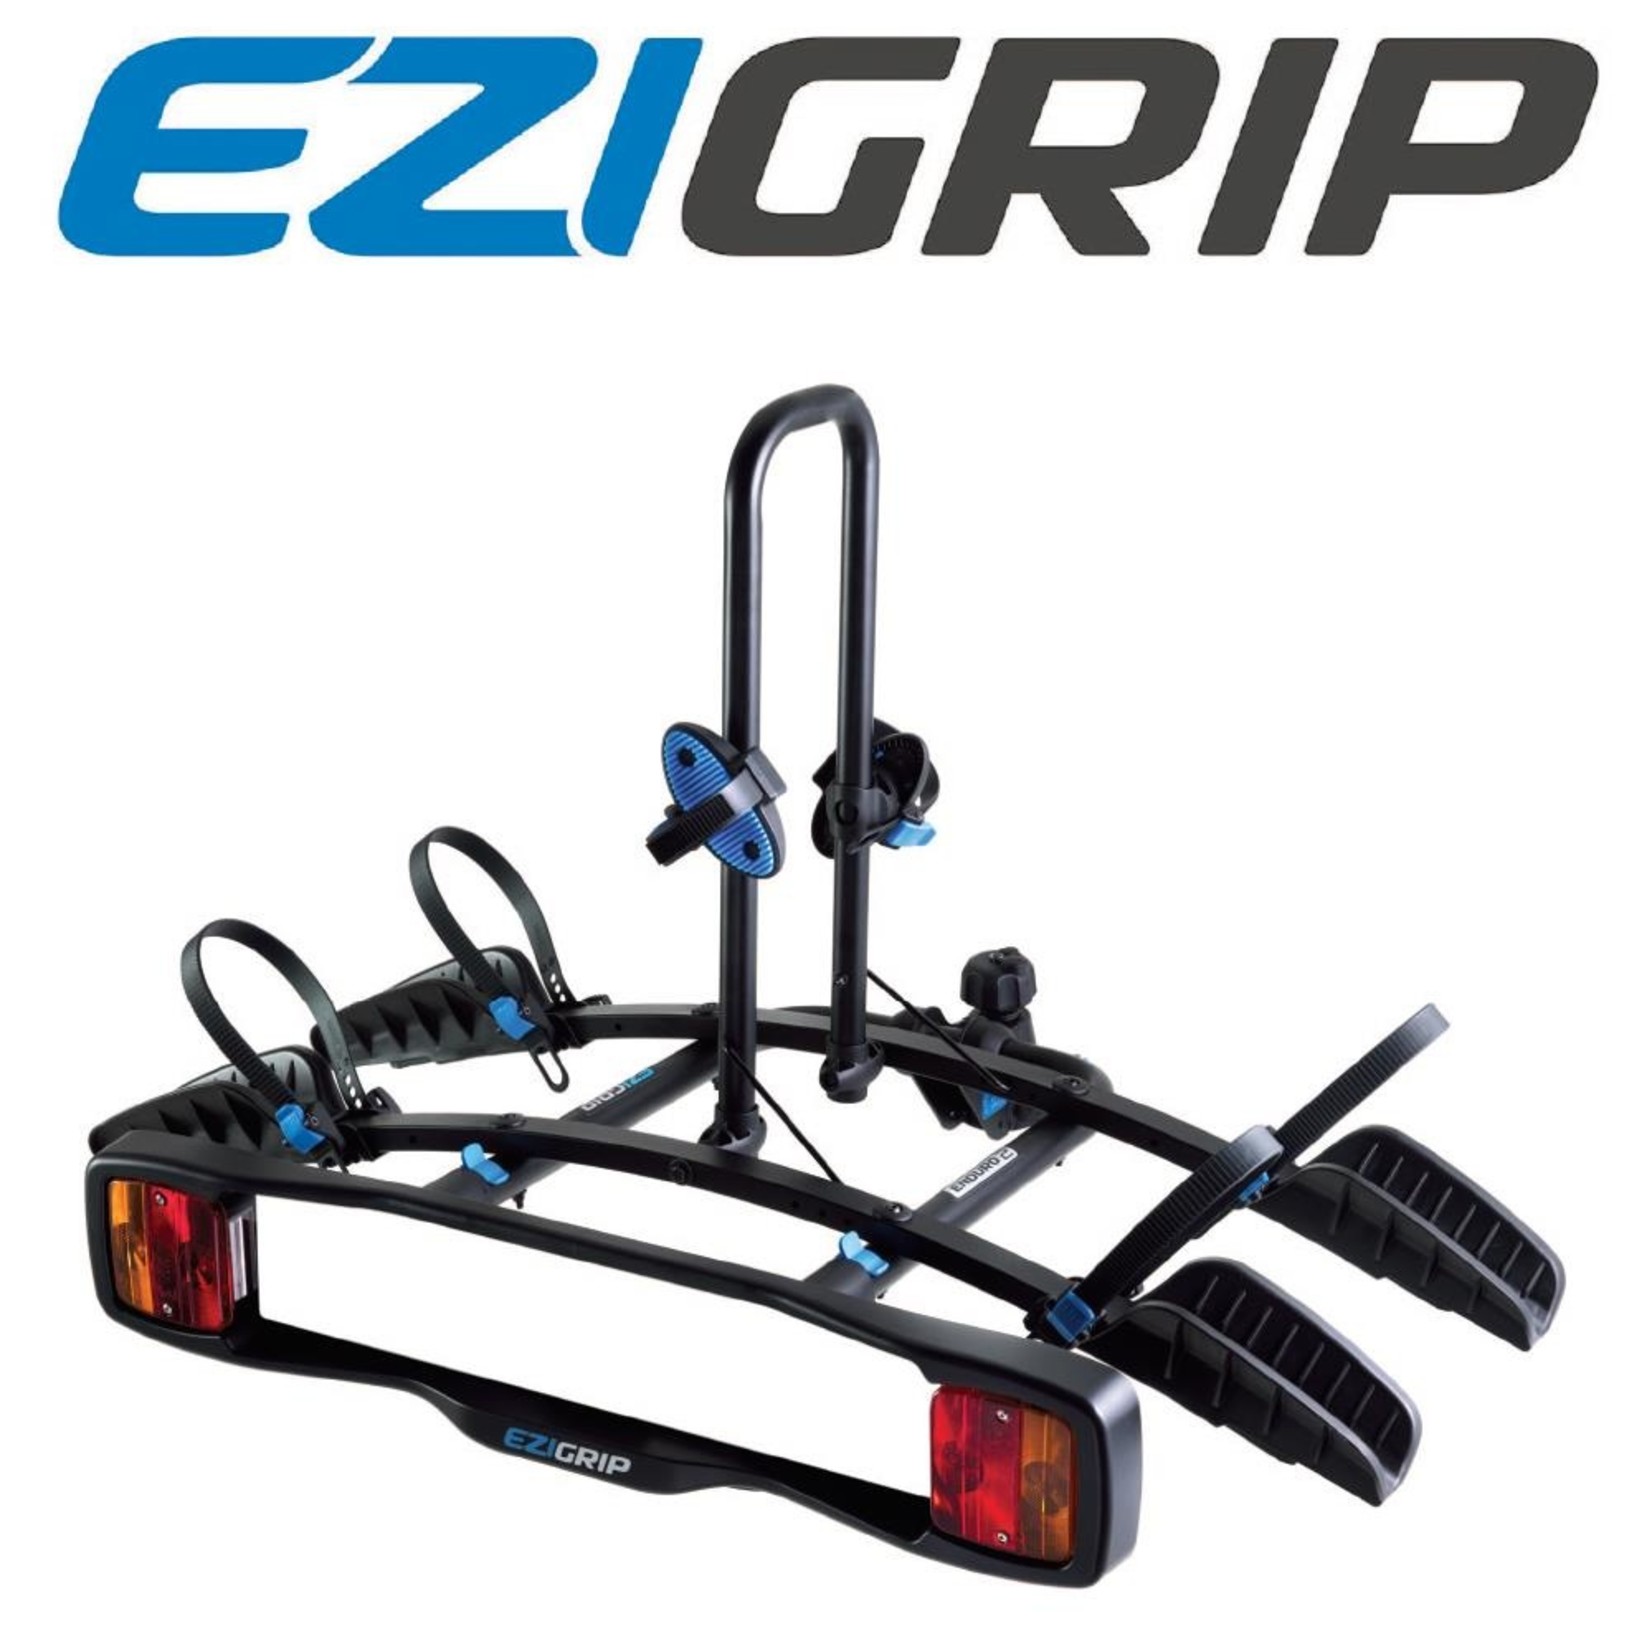 Ezi Grip EziGrip Enduro 2 Bike Rack - Towball Mounted Bike Rack - 30KG(Max 15kg Per Bike)